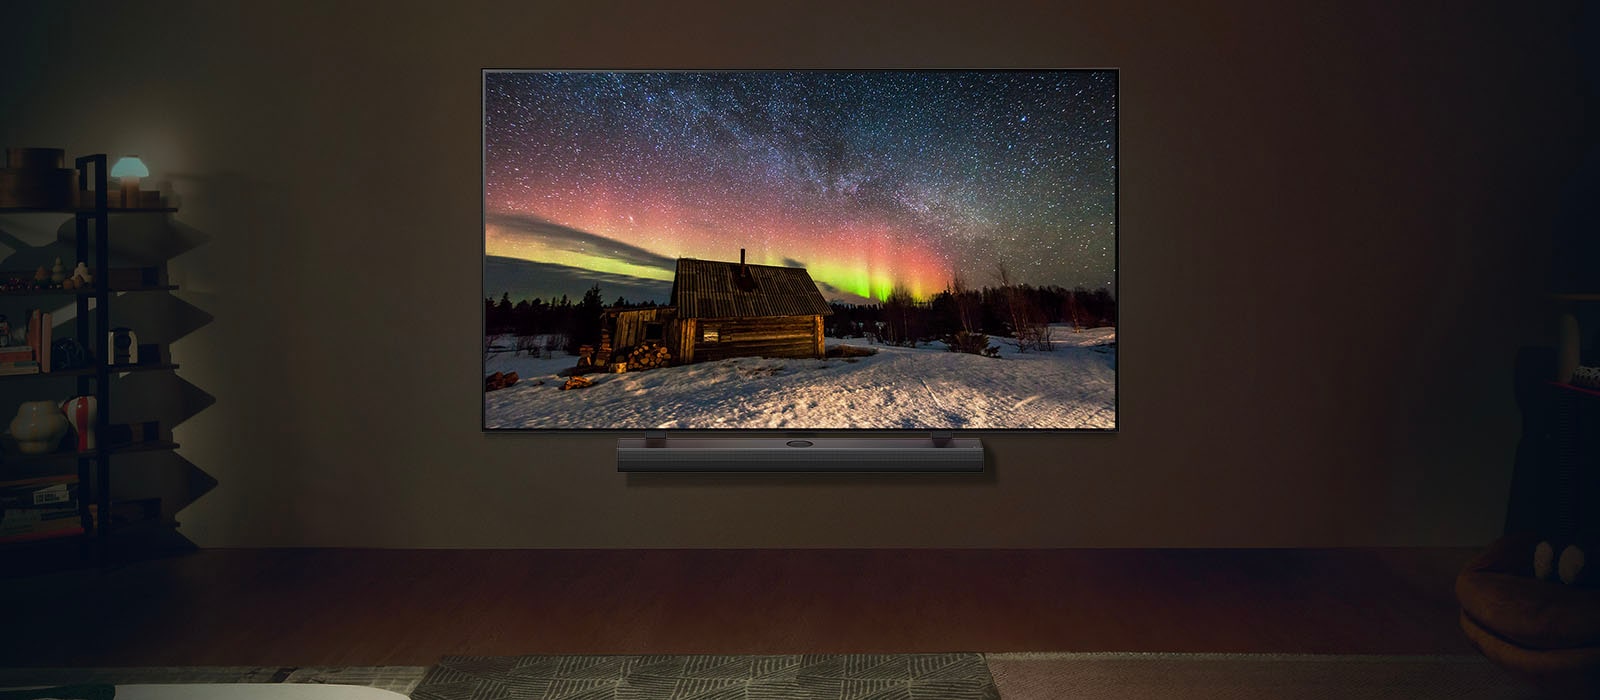 LG Fernseher und LG Soundbar in einem modernen Wohnraum bei Nacht. Das Bild des Polarlichts wird auf dem Bildschirm mit der idealen Helligkeitsstufe angezeigt.	